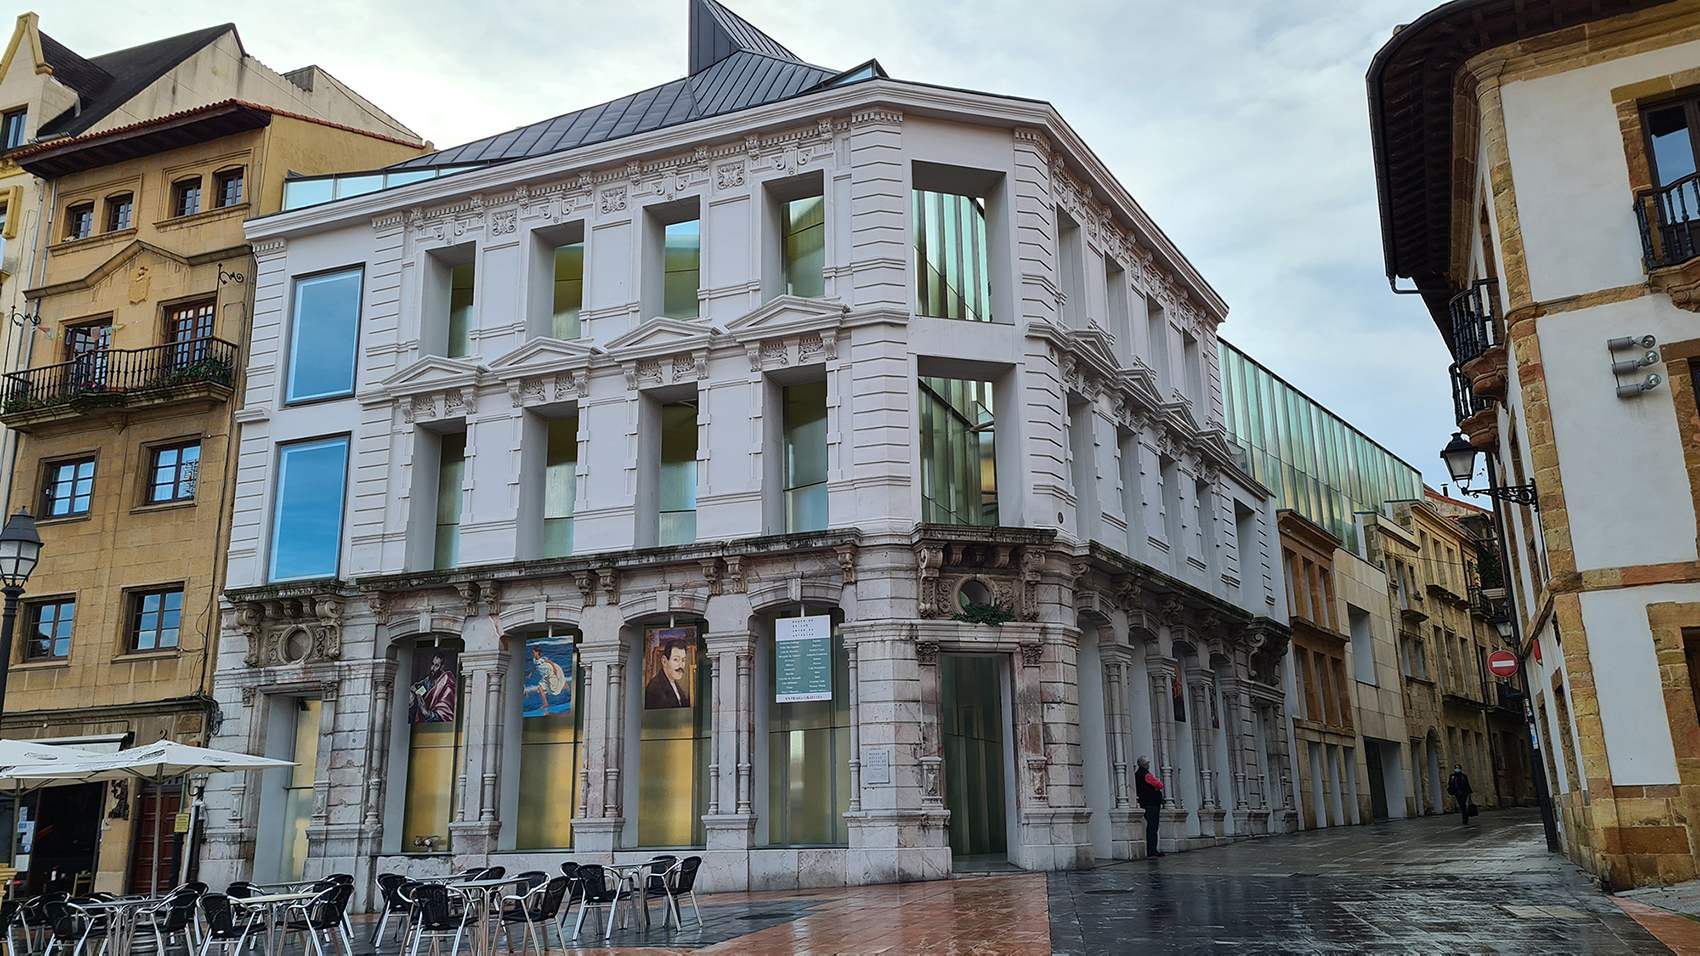 Fotografía de la entrada al museo de Bellas Artes de Oviedo, concretamente a la nueva ampliación donde se observa el edificio de fachada blanca articulada con ventanales y cristaleras que aportan gran luminosidad.